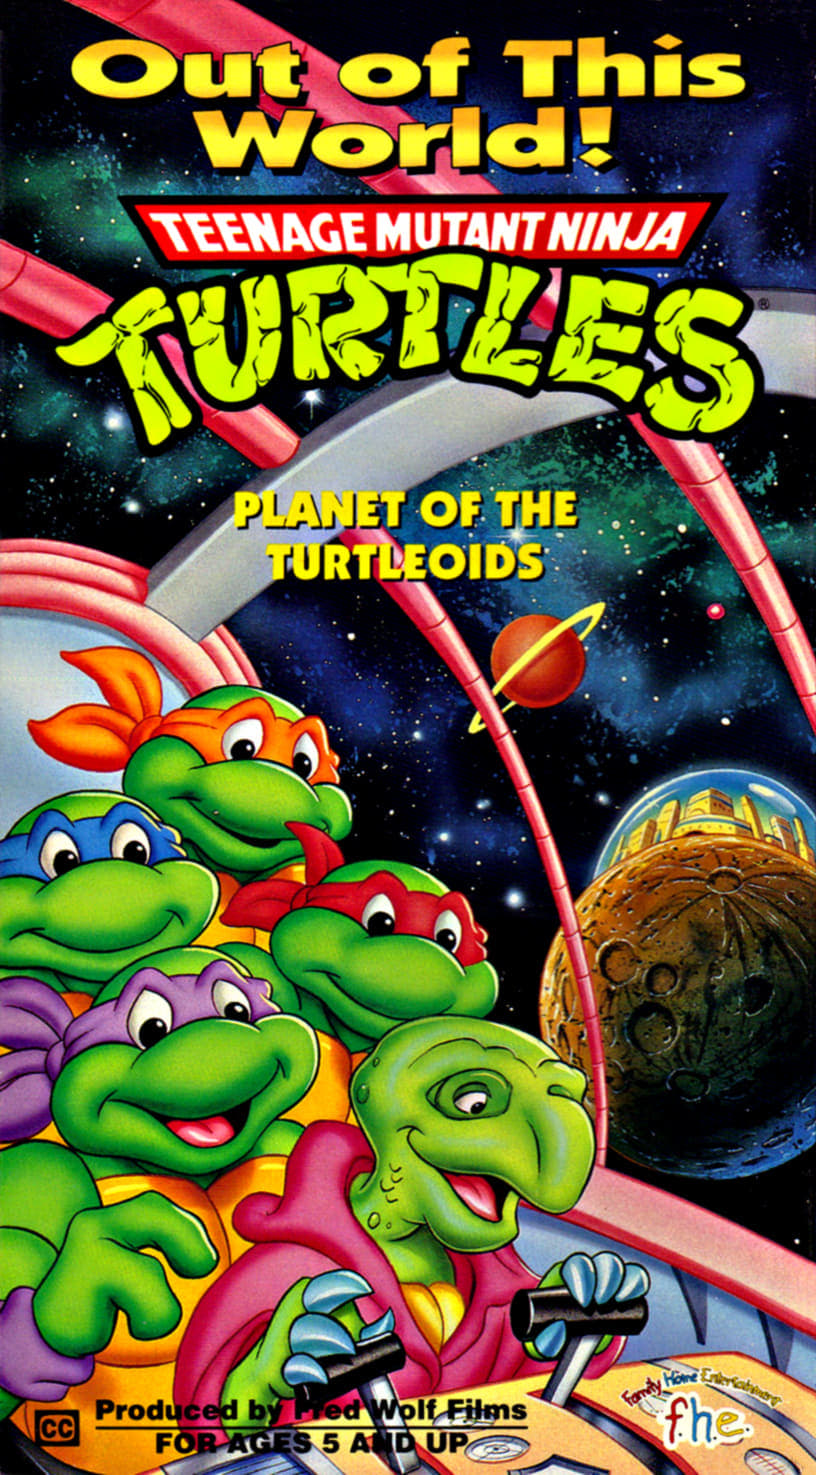 Teenage Mutant Ninja Turtles: Planet of the Turtleoids (1991)